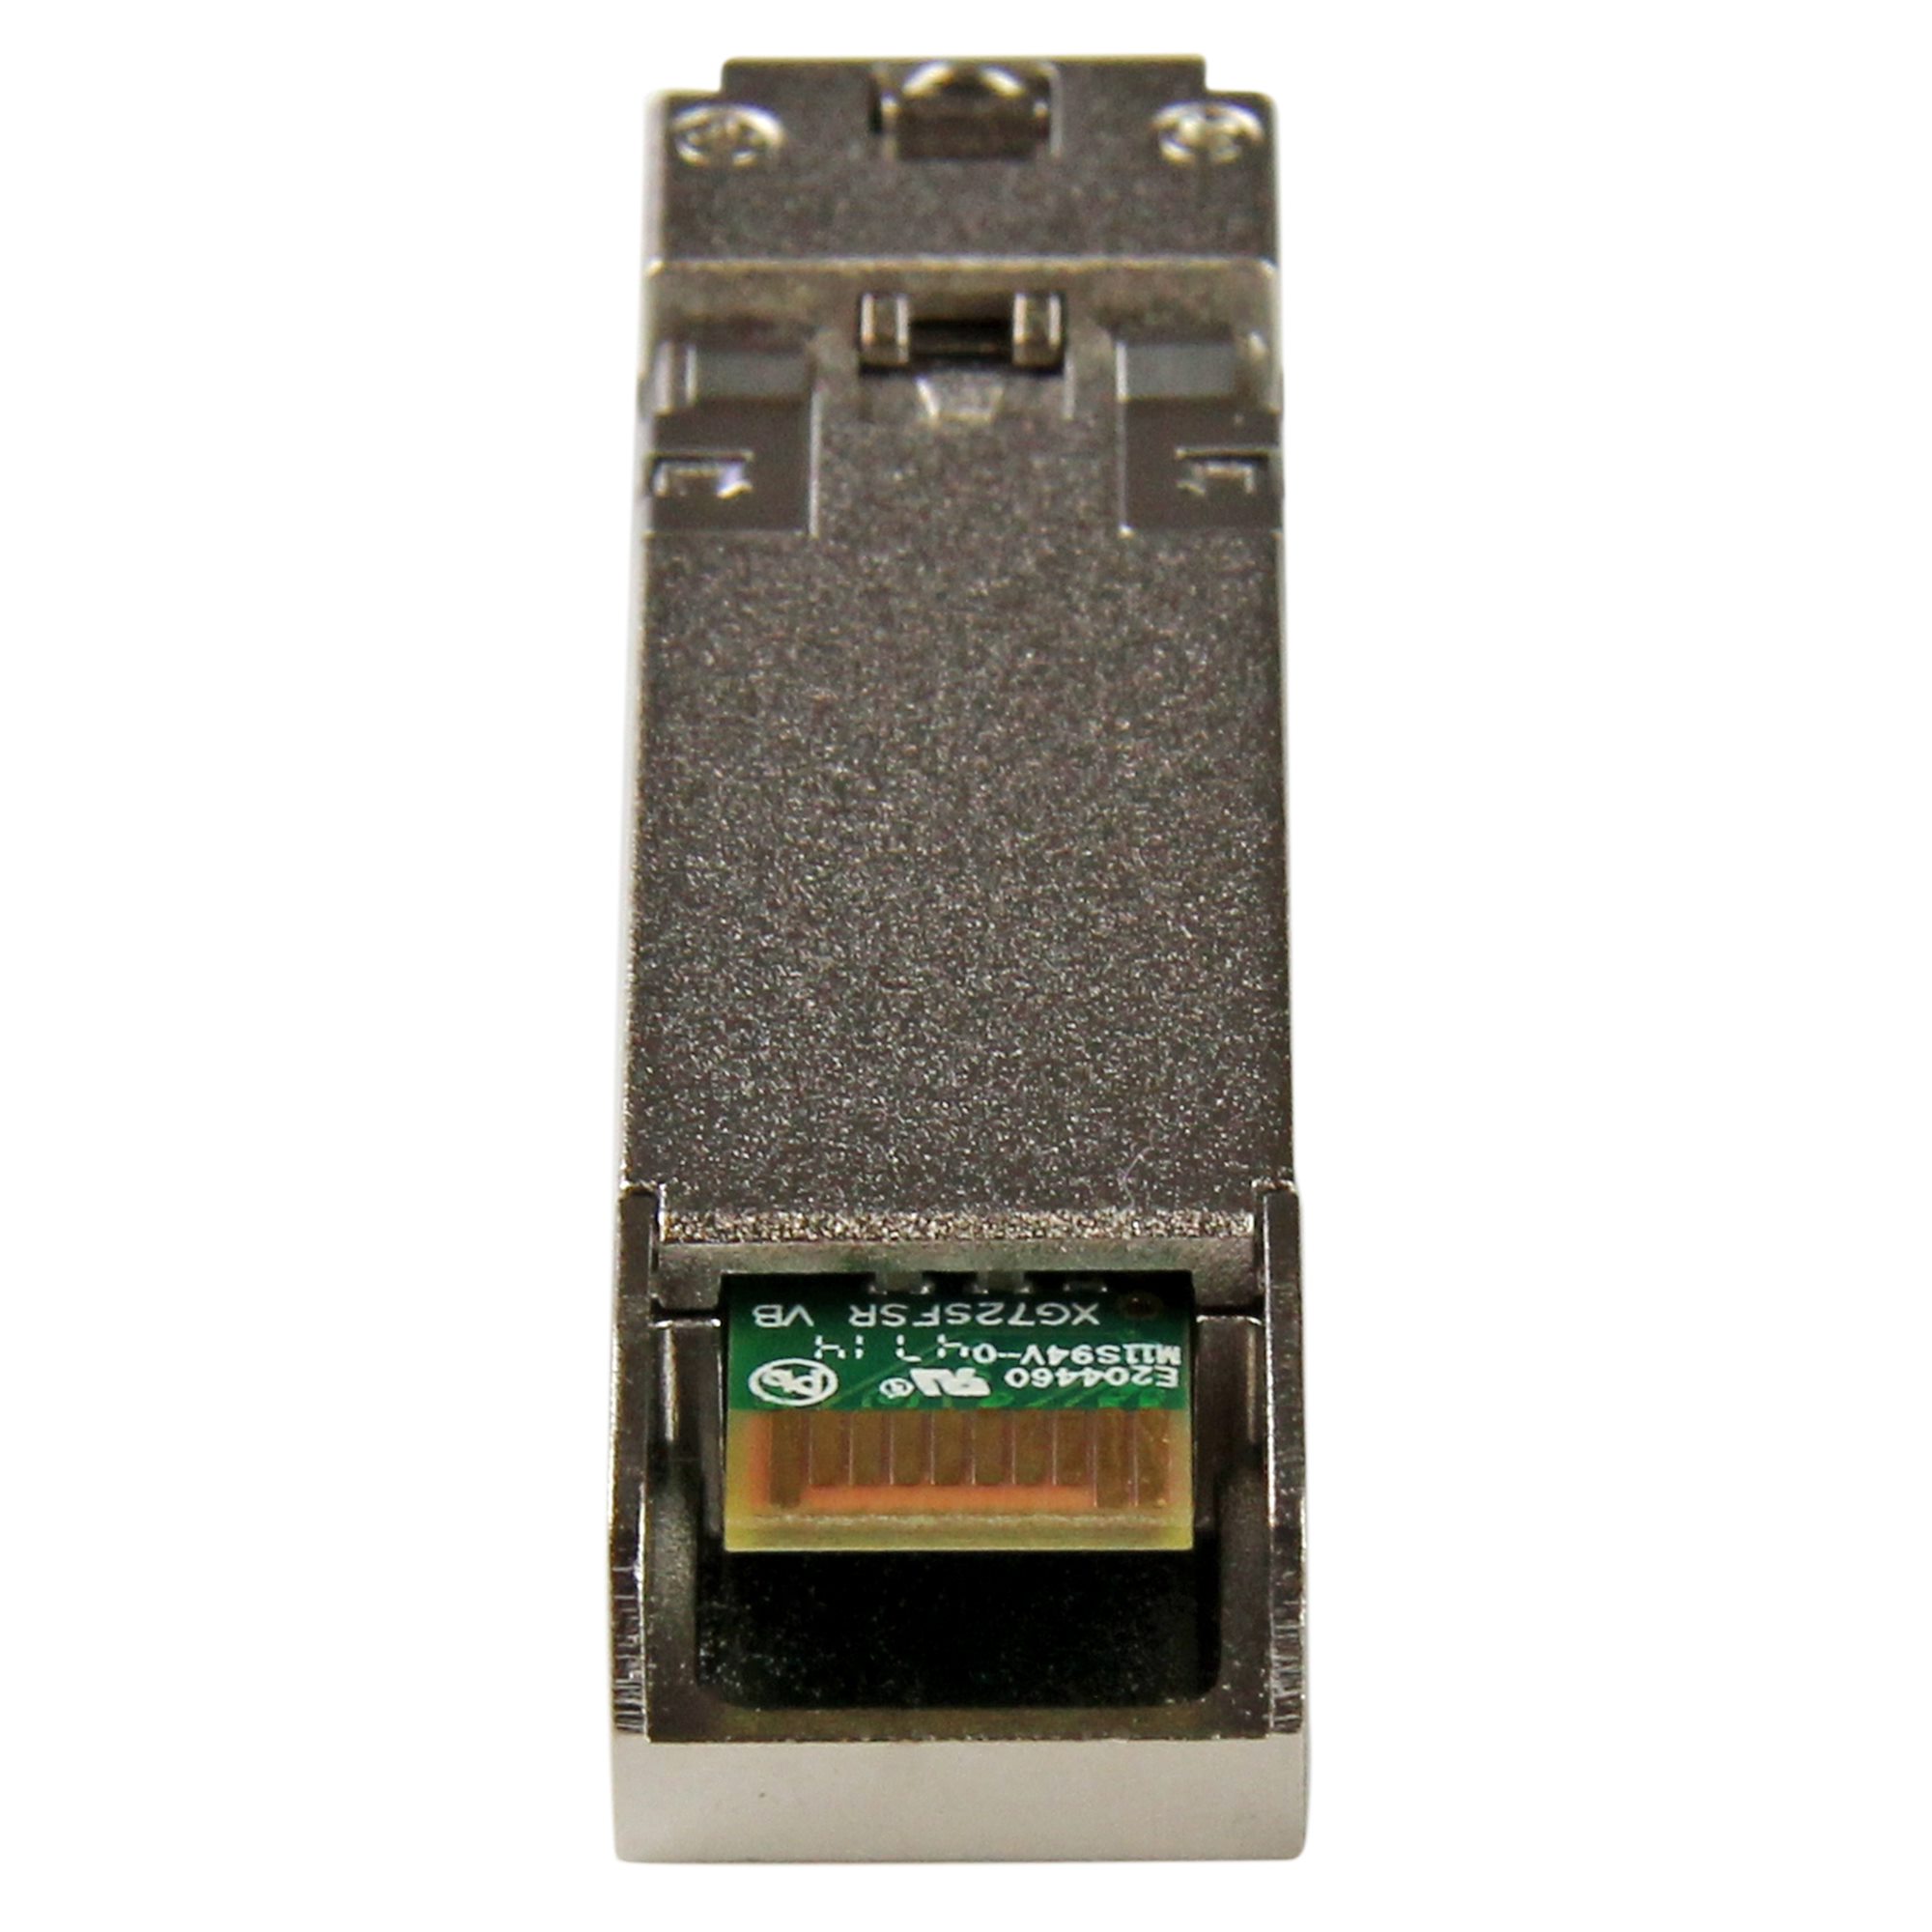 Cisco SFP-10G-SR Comp. SFP+ - 10GbE DDM - SFP Modules | StarTech.com